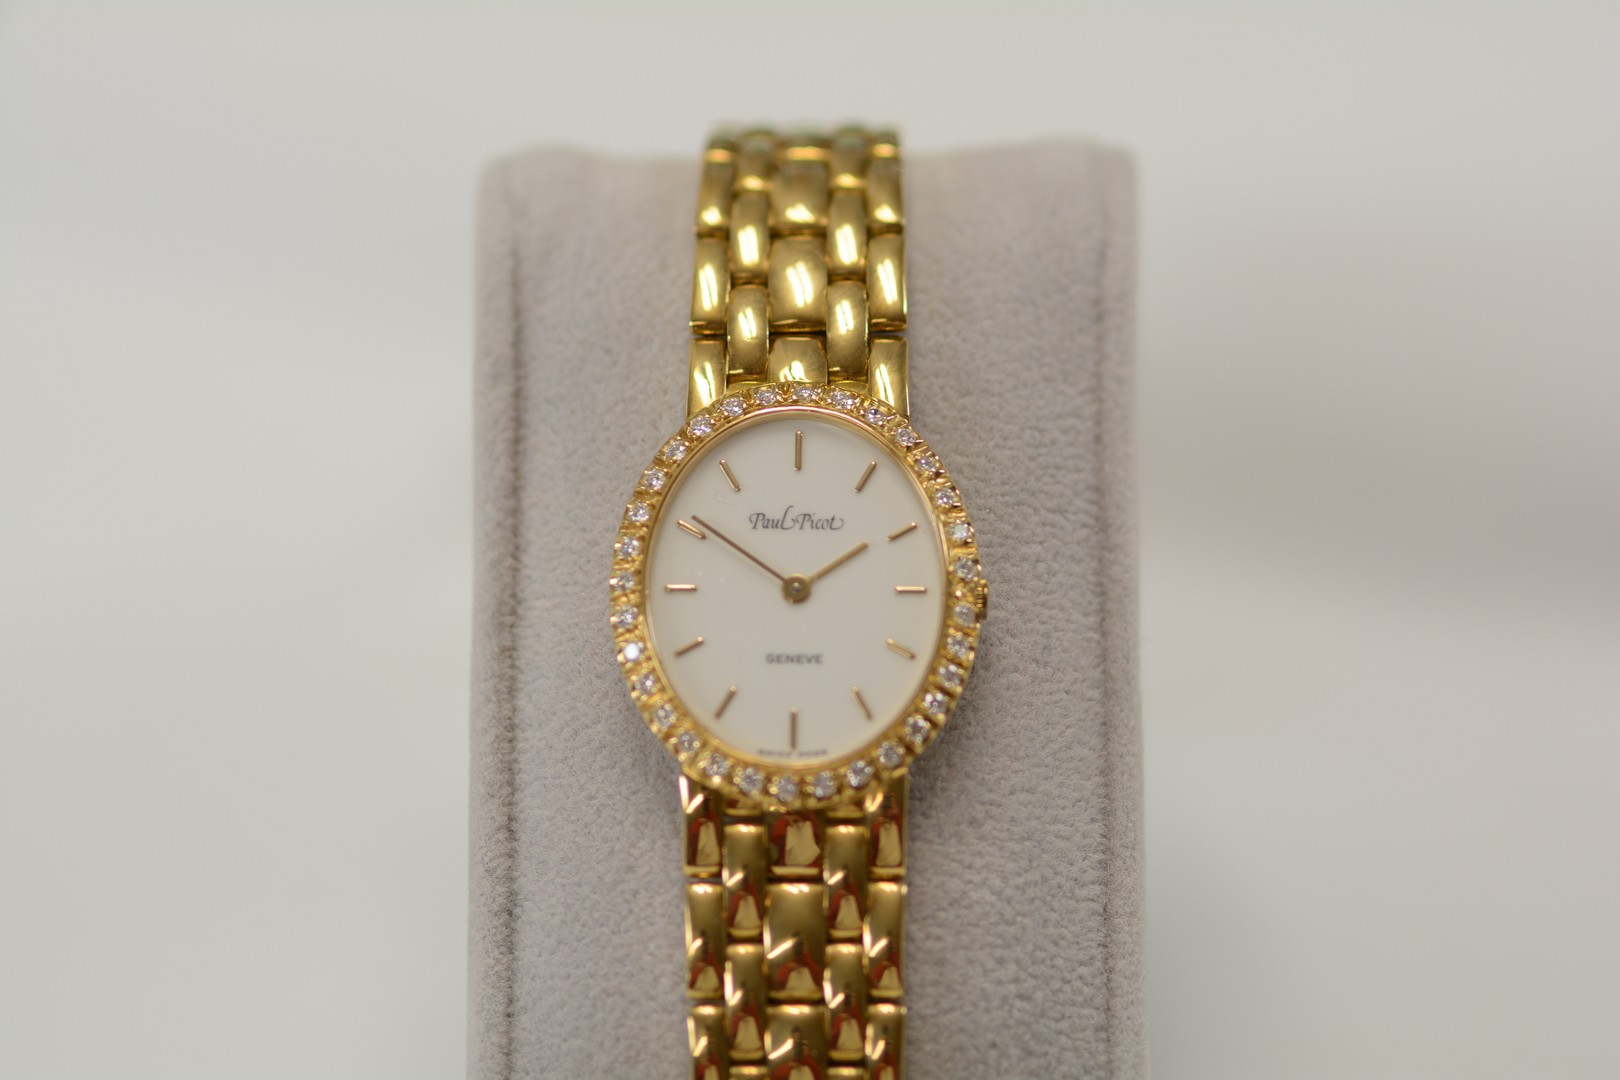 Paul Picot / Diamond - Lady's Yellow gold Wrist Watch - Image 4 of 16